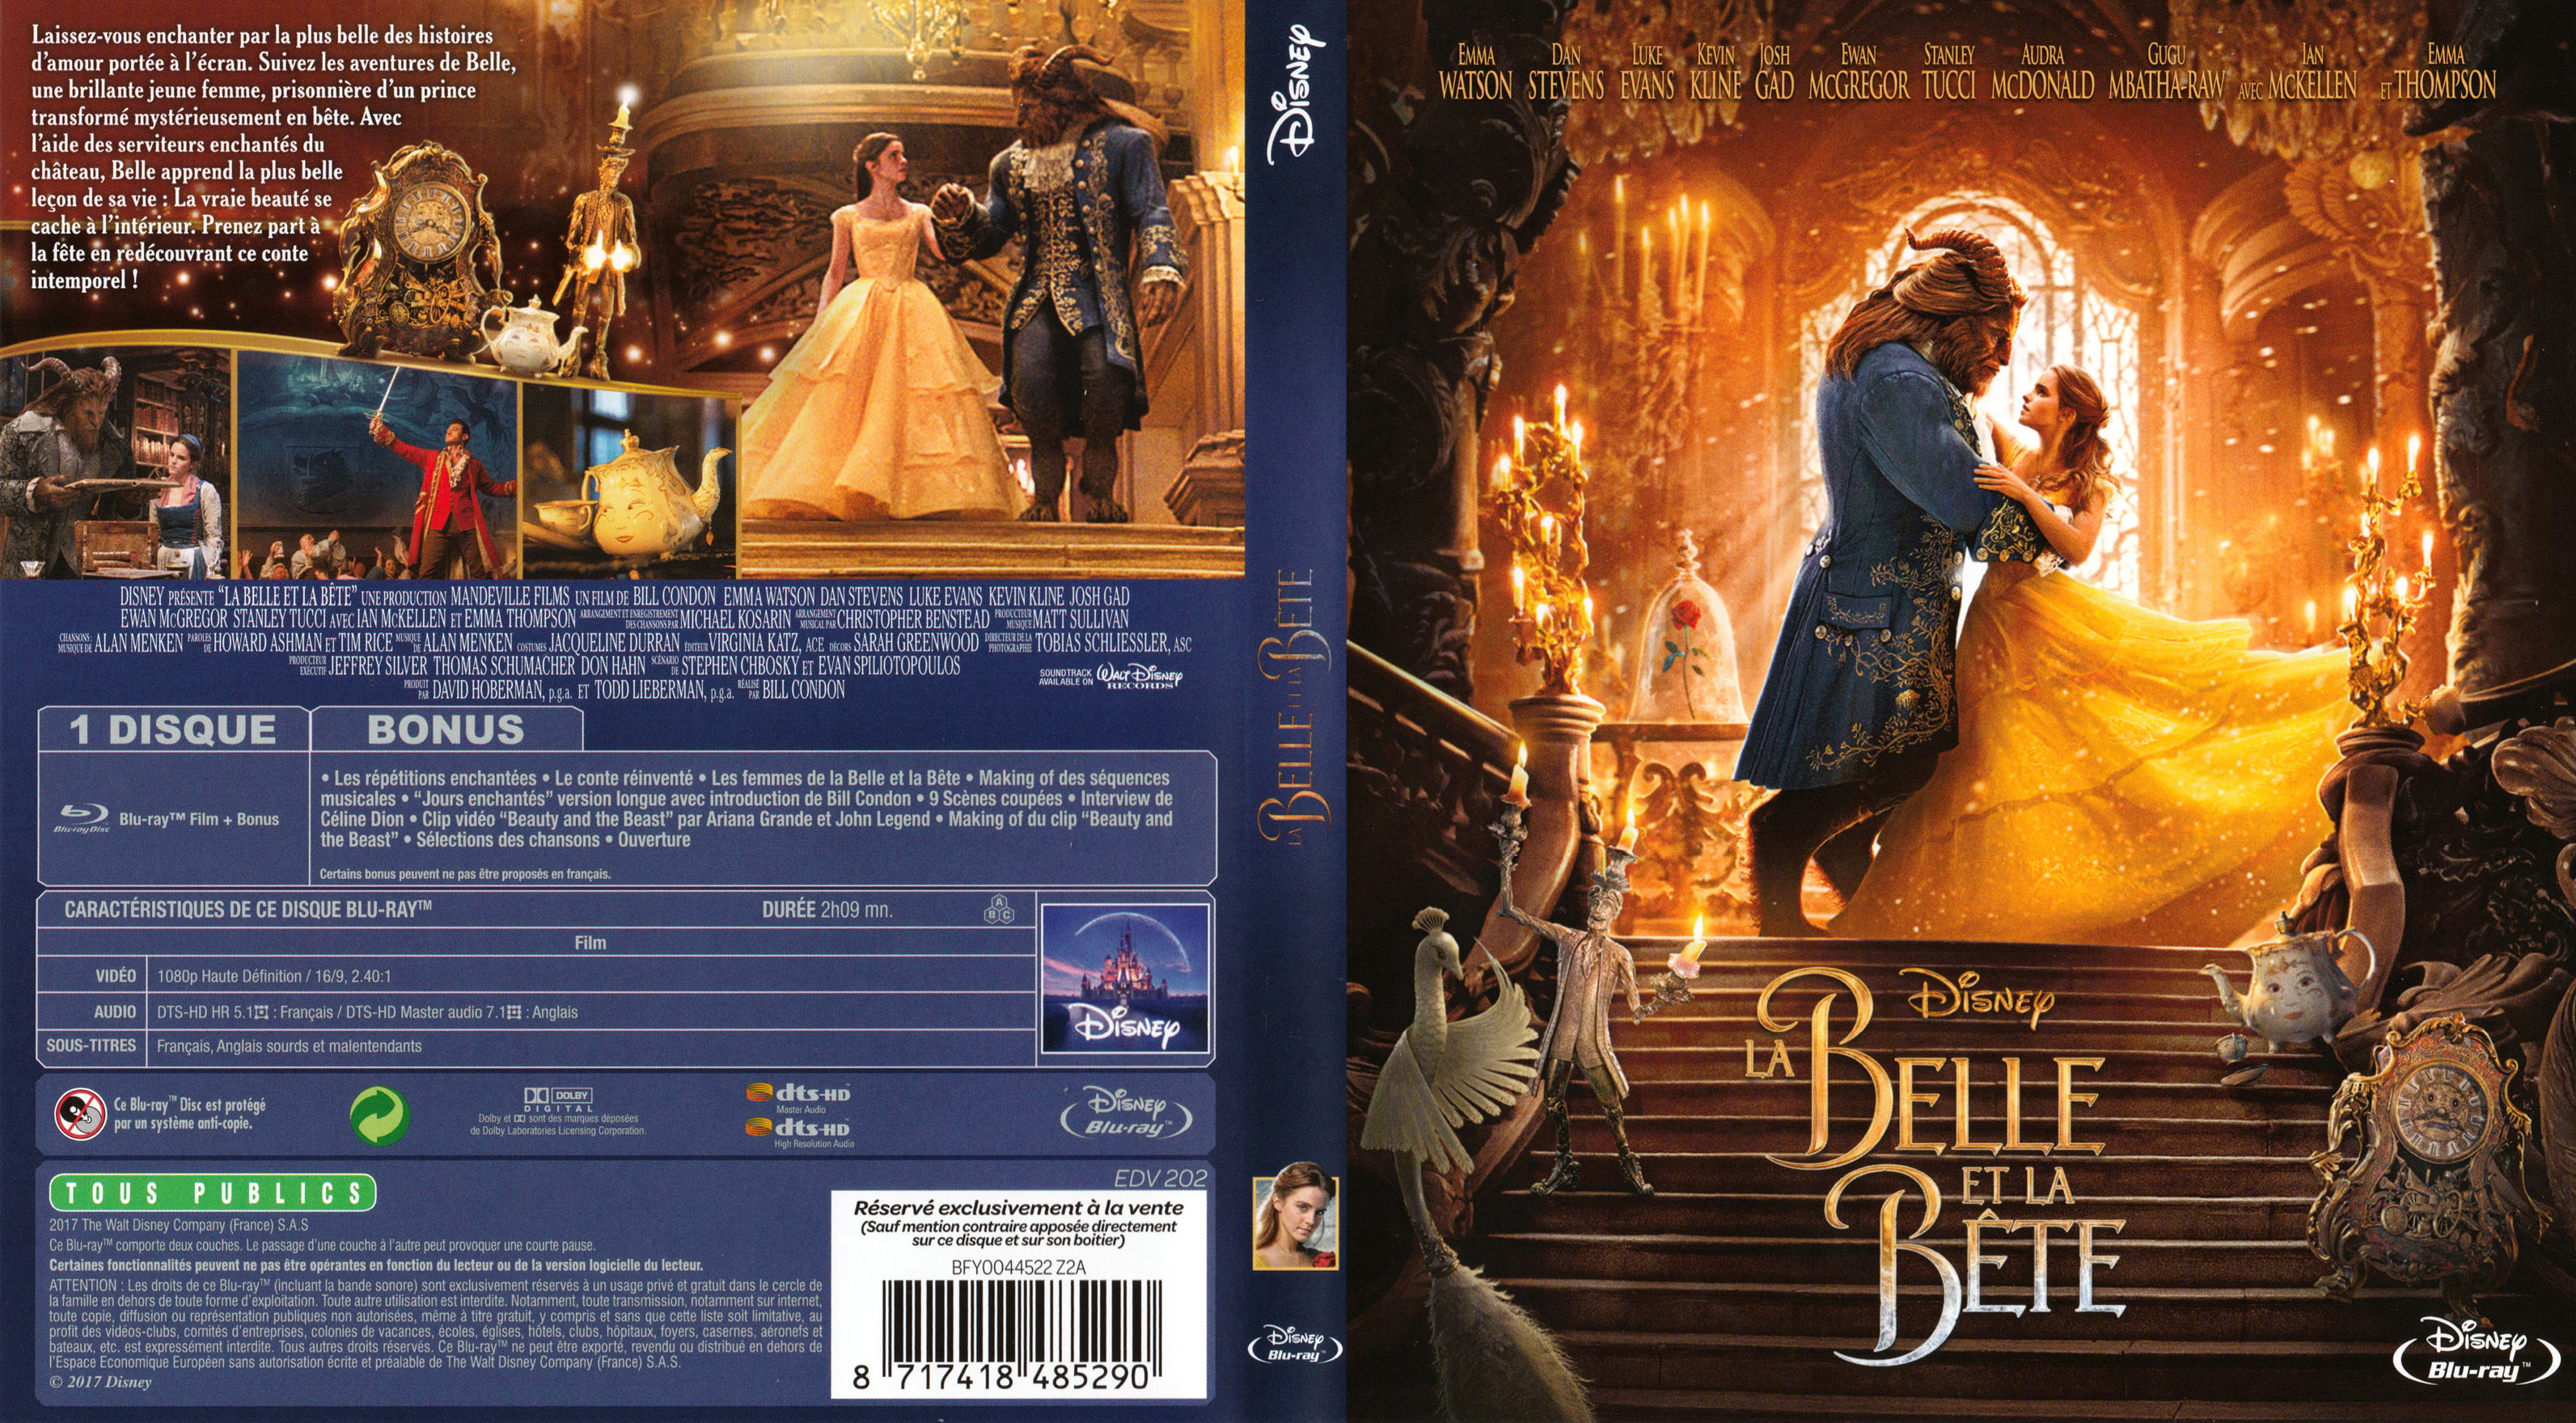 Jaquette Dvd De La Belle Et La Bete 2017 Blu Ray Cinema Passion